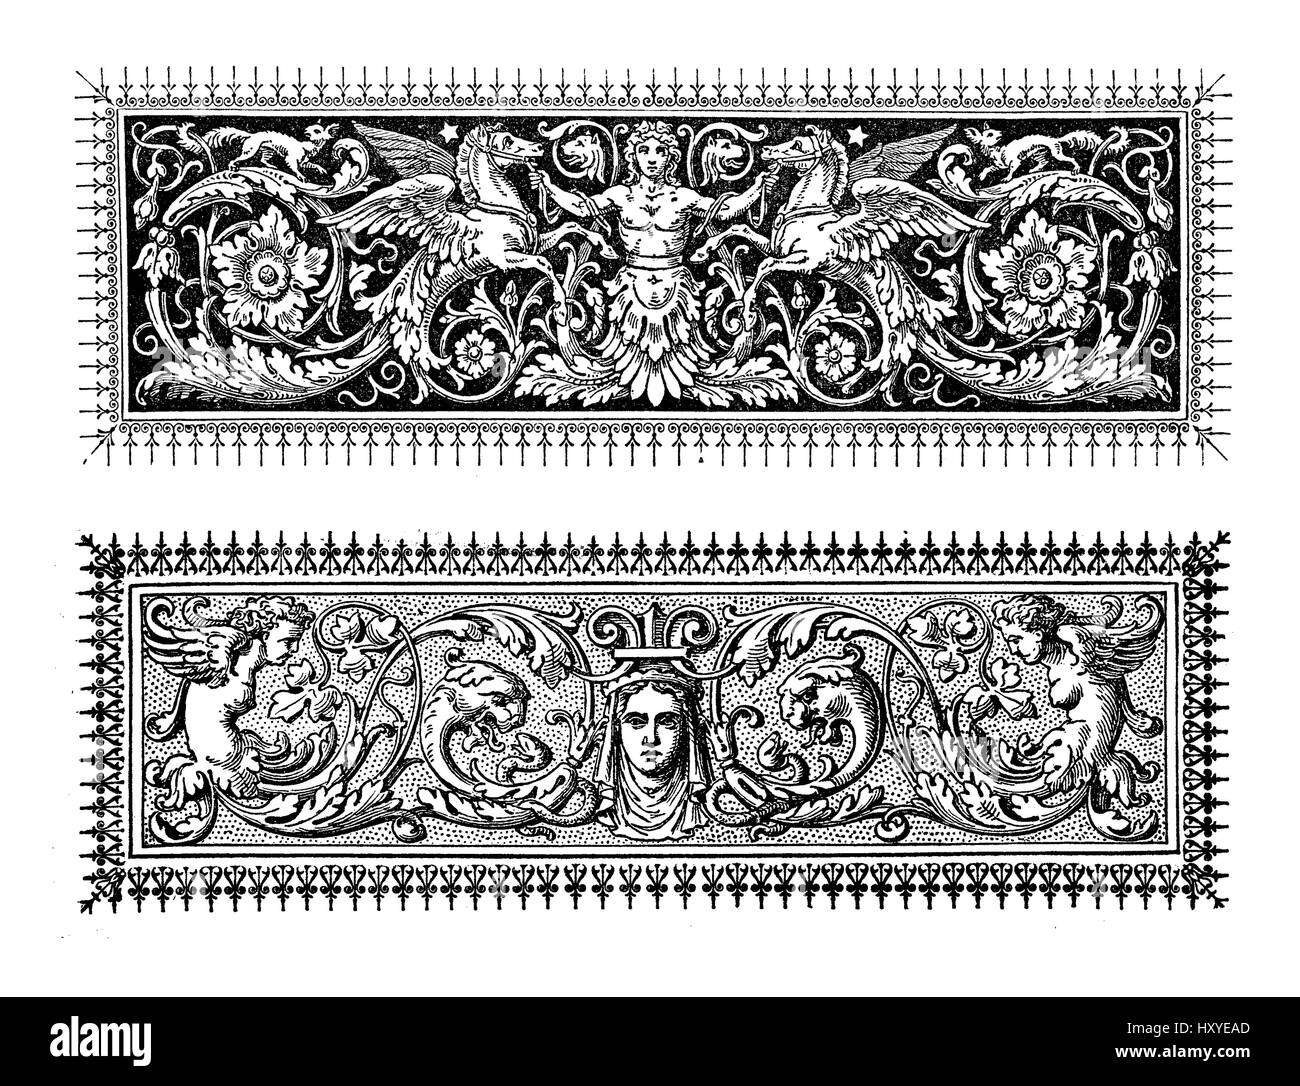 Deux frontières typographiques baroques richement décorées avec des figures mythologiques et motifs floraux Banque D'Images